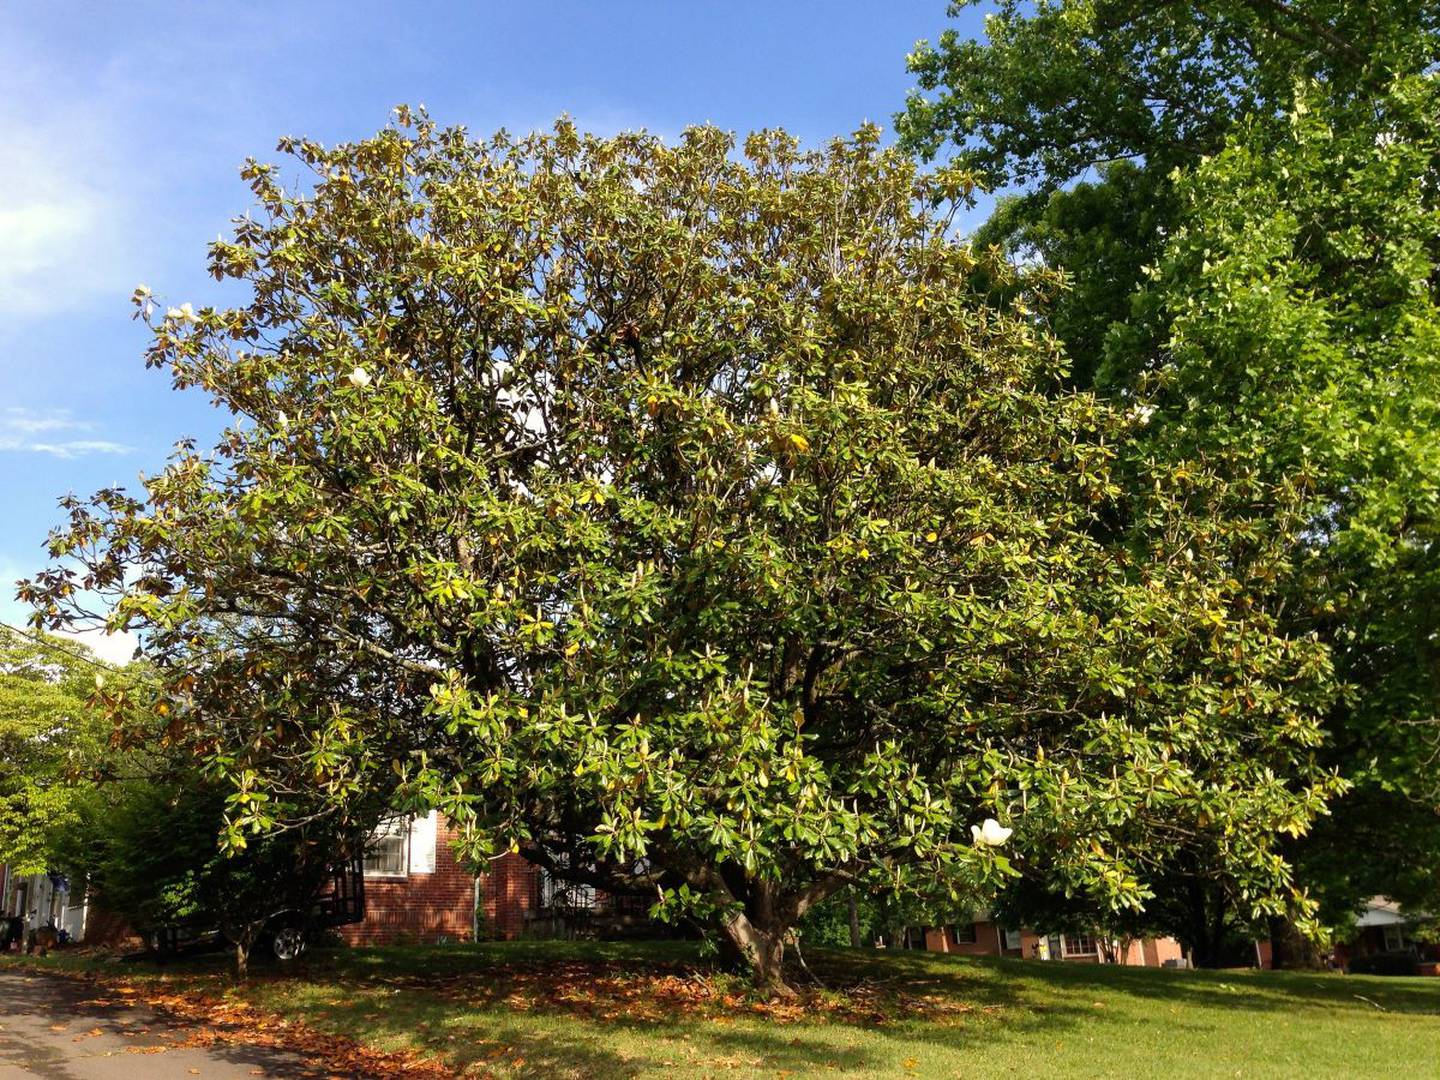 Árbol de Magnolia